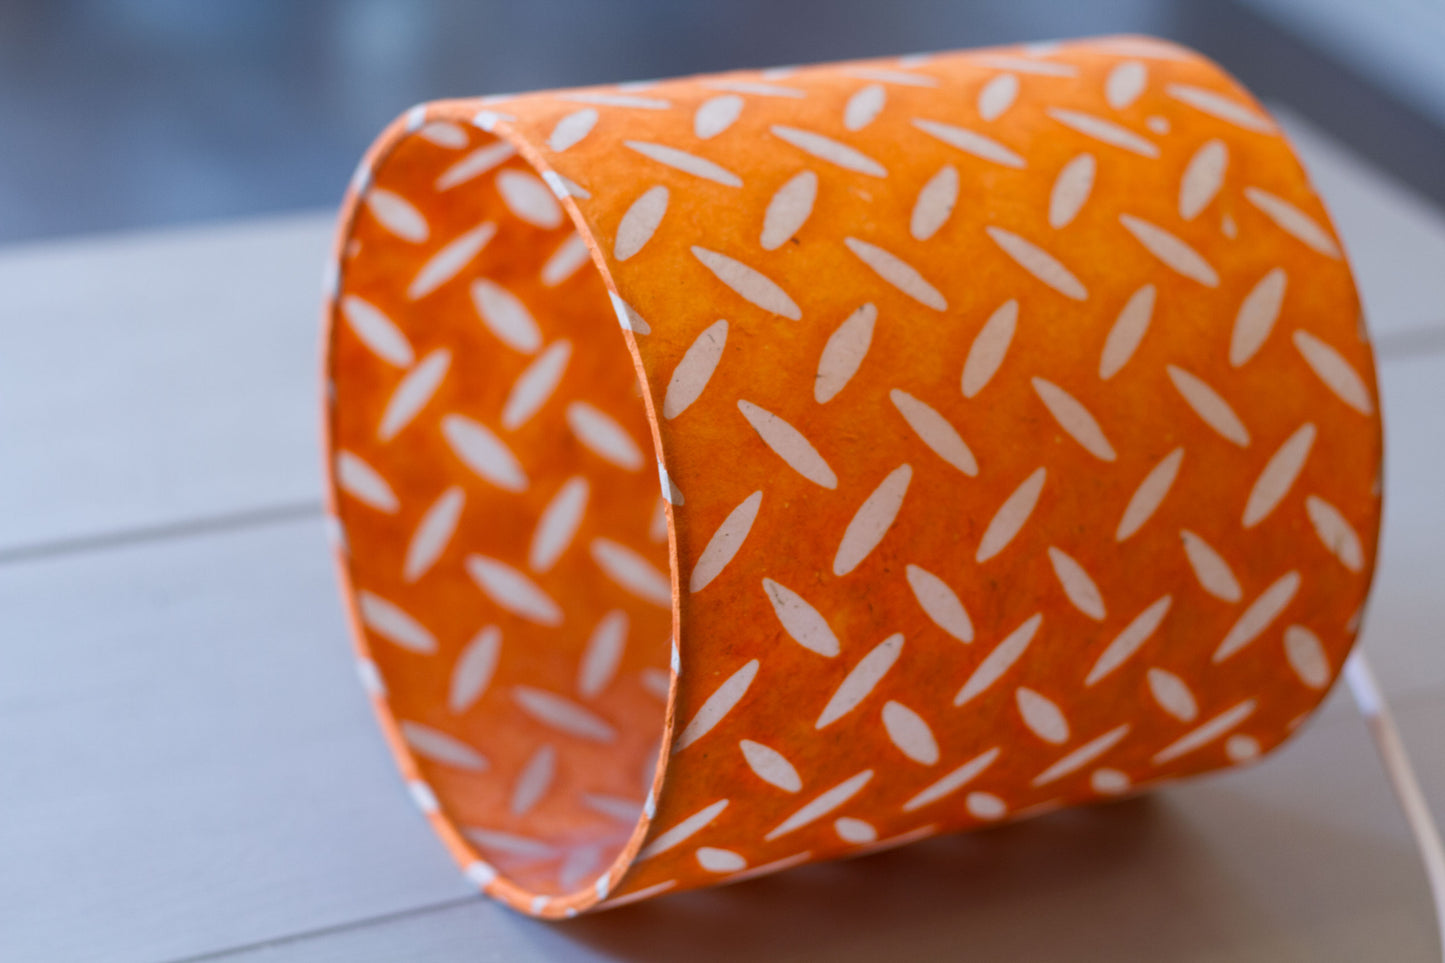 Drum Lamp Shade - P91 - Batik Tread Plate Orange, 50cm(d) x 25cm(h)